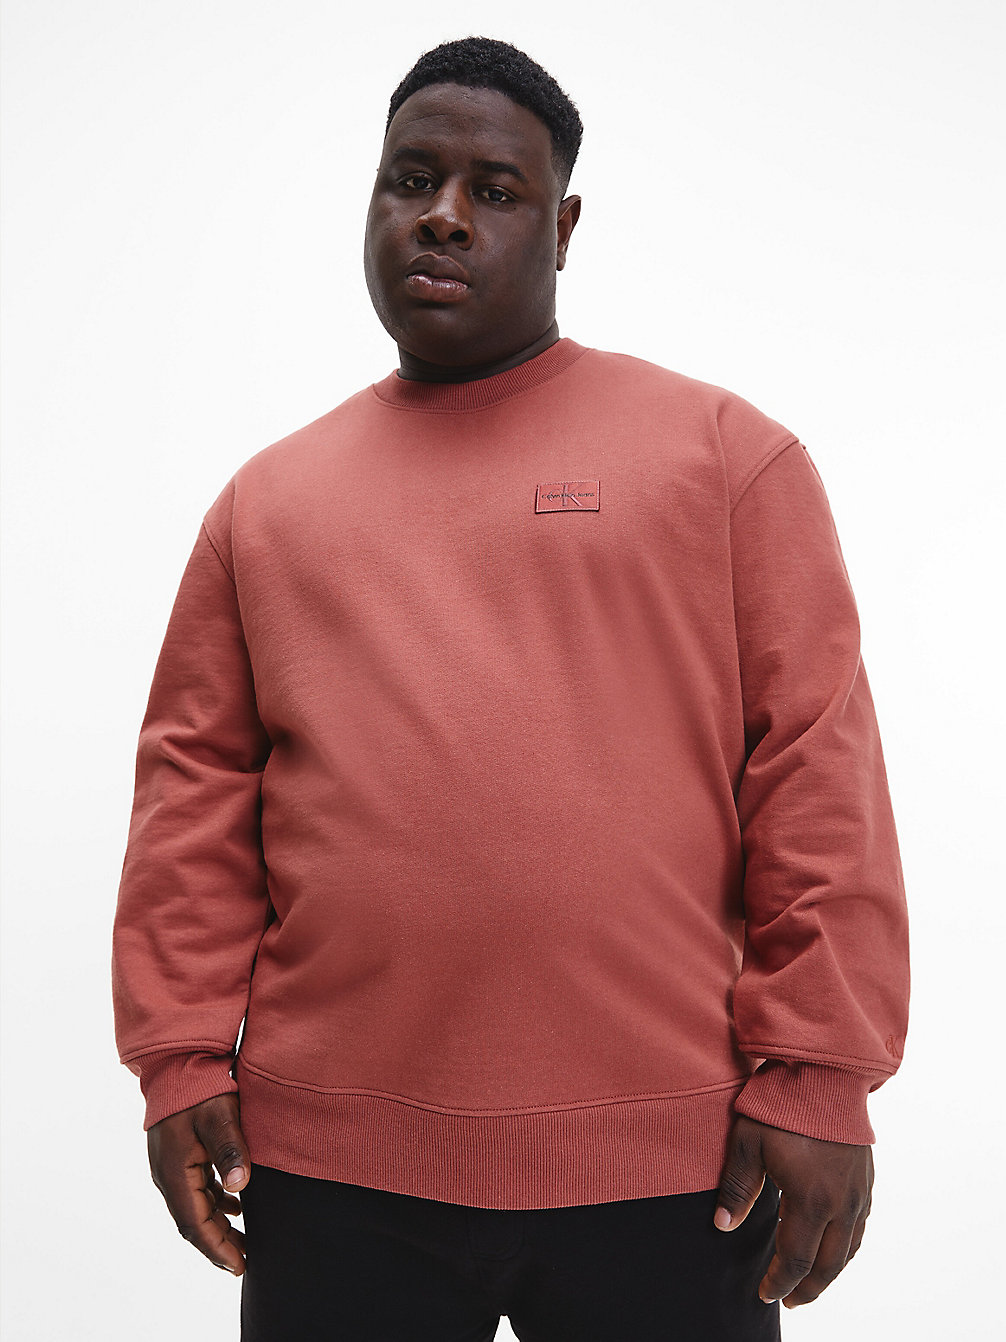 TERRACOTTA TILE Sweatshirt Aus Recycelter Baumwolle In Großen Größen undefined Herren Calvin Klein